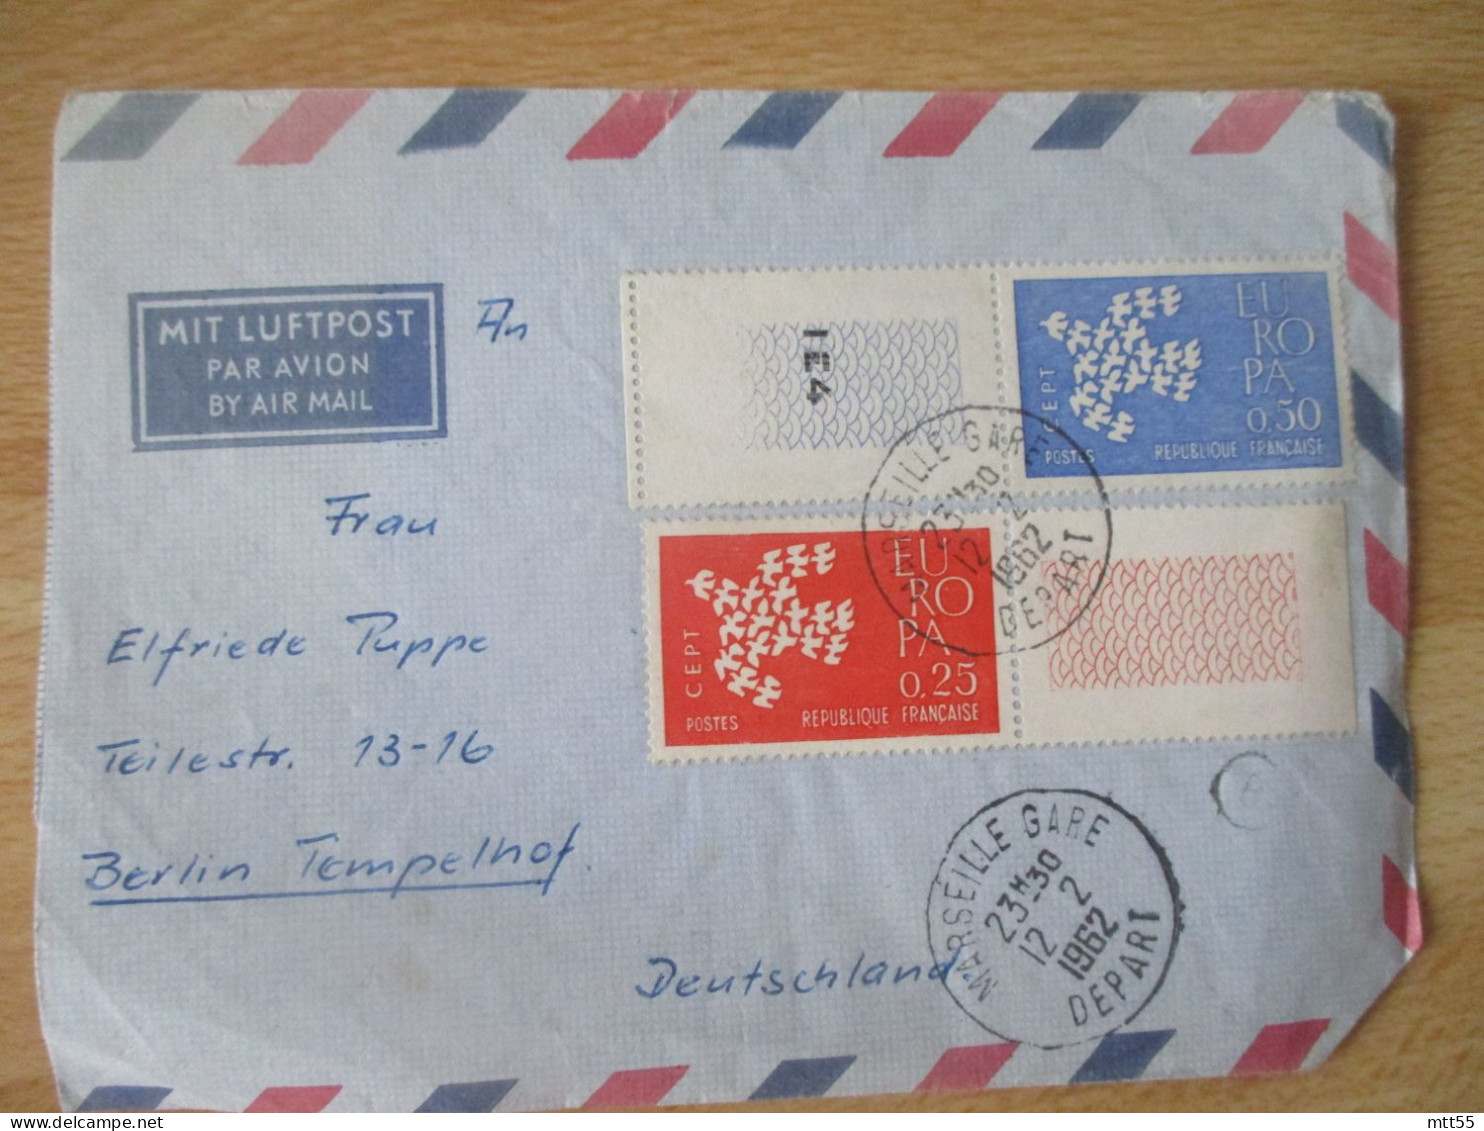 LETTRE TIMBRE EUROPA 1962 LES DEUX VALEURS BORD DE FEUILLE - Briefe U. Dokumente